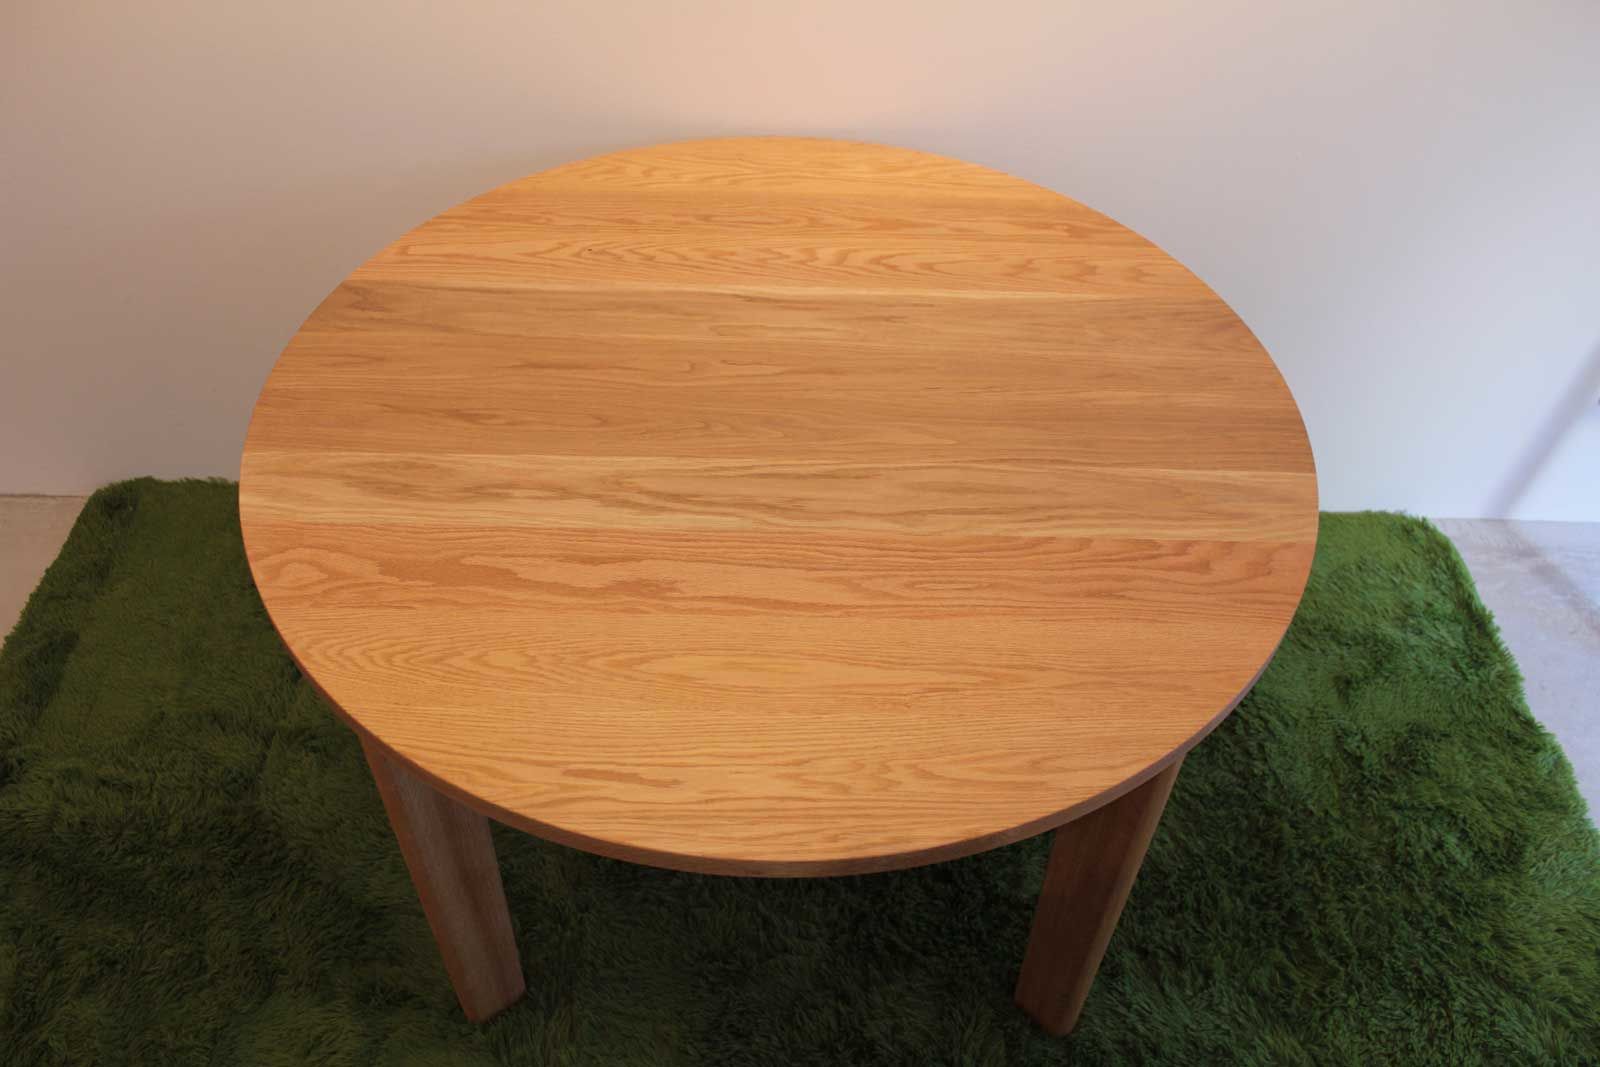 「ダイニングテーブルを手放したくないが、新居では丸テーブルを使いたい」というお客様のテーブルを長方形から円形にリメイク